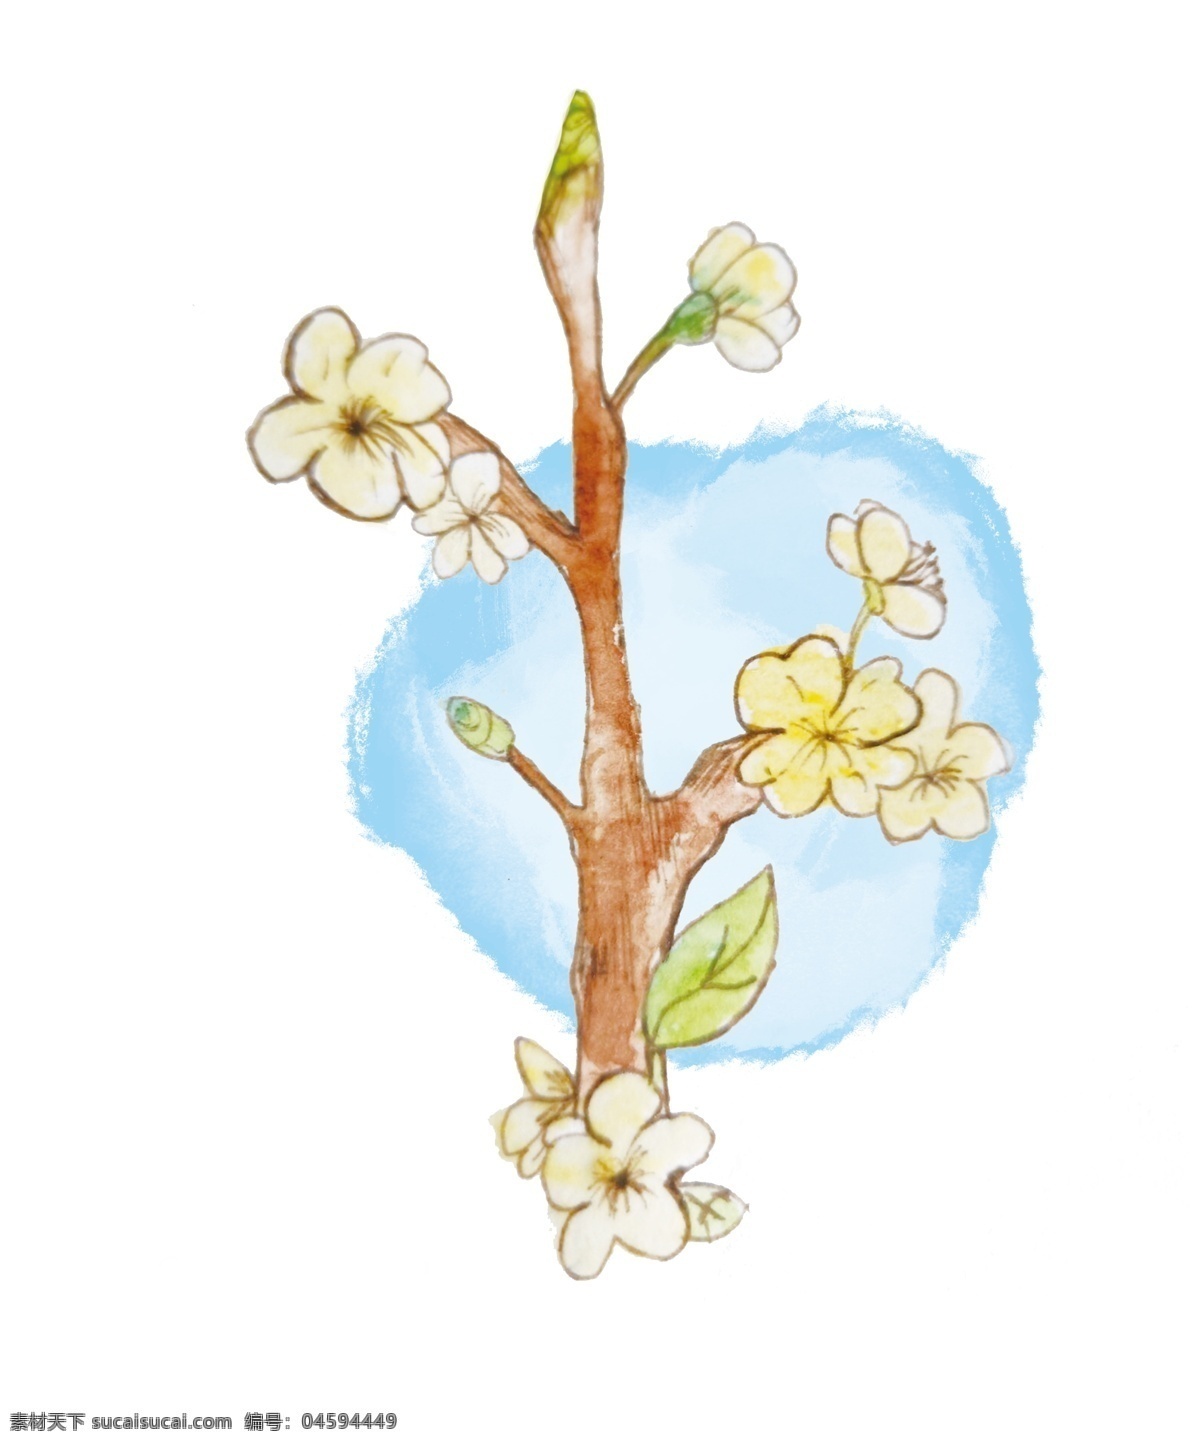 二十四节气 春分 手绘 节气 水彩 黄色花朵 绿叶 水墨 中国风 插画花朵 唯美 清新 水彩花朵 原创